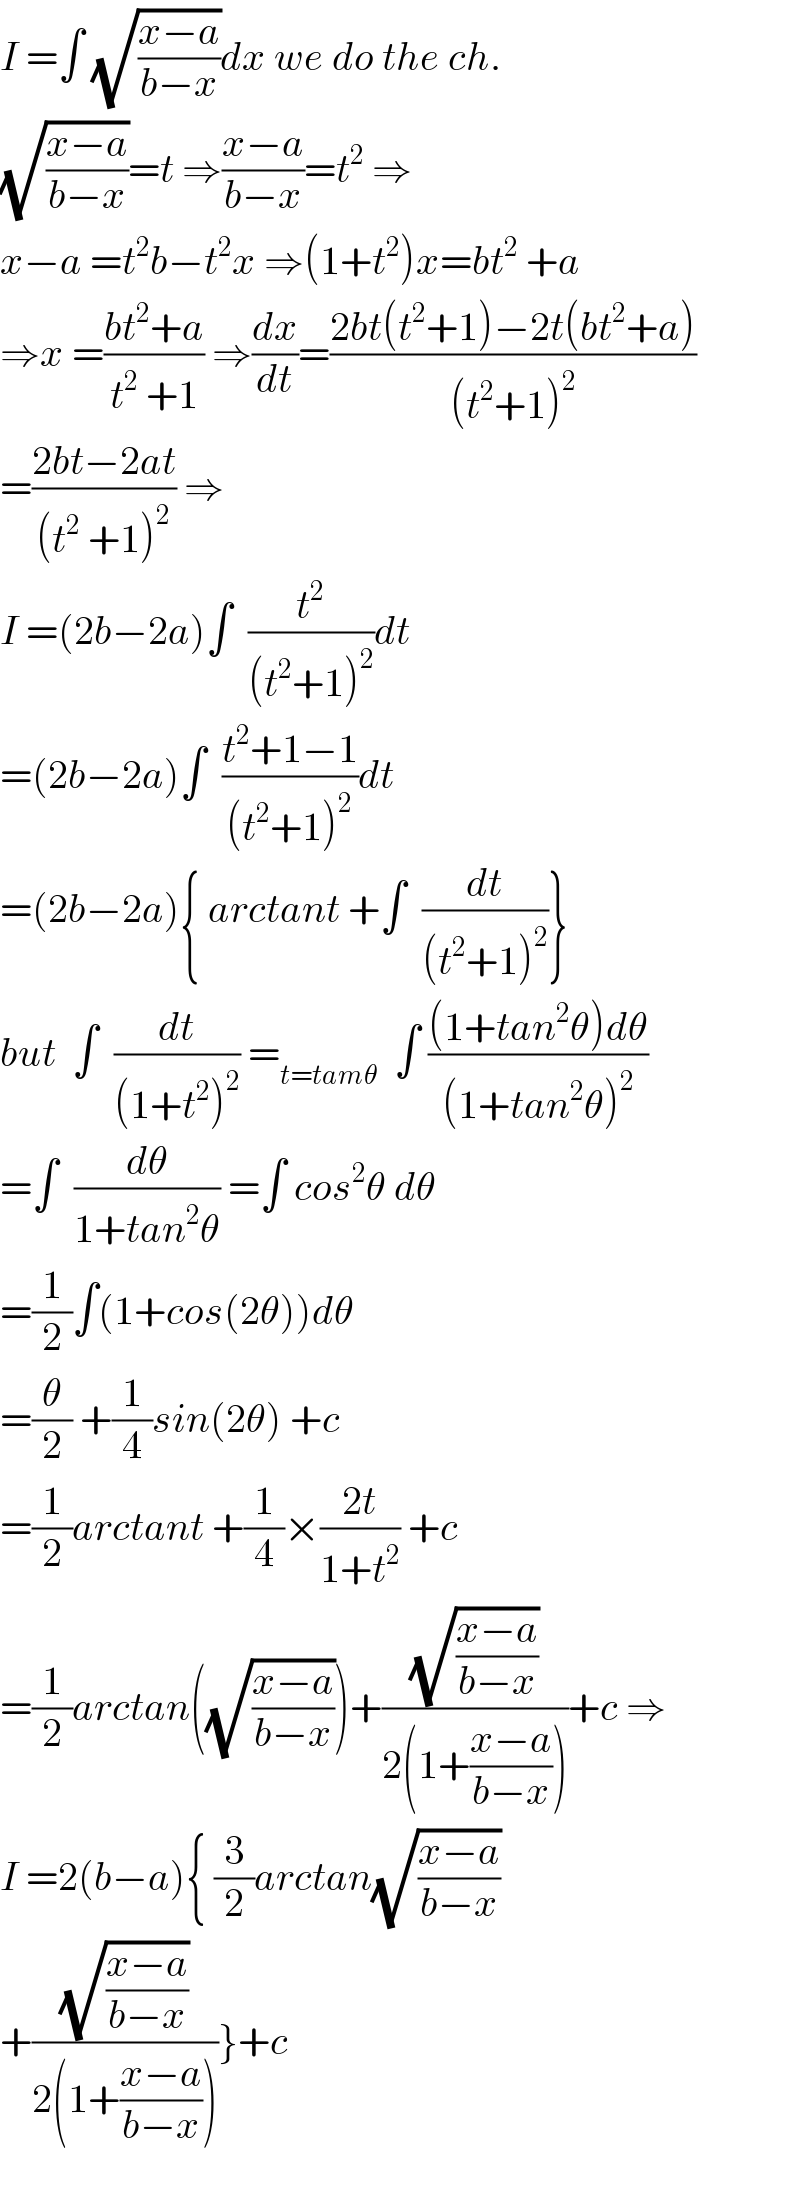 I =∫ (√((x−a)/(b−x)))dx we do the ch.  (√((x−a)/(b−x)))=t ⇒((x−a)/(b−x))=t^2  ⇒  x−a =t^2 b−t^2 x ⇒(1+t^2 )x=bt^2  +a  ⇒x =((bt^2 +a)/(t^2  +1)) ⇒(dx/dt)=((2bt(t^2 +1)−2t(bt^2 +a))/((t^2 +1)^2 ))  =((2bt−2at)/((t^2  +1)^2 )) ⇒  I =(2b−2a)∫  (t^2 /((t^2 +1)^2 ))dt  =(2b−2a)∫  ((t^2 +1−1)/((t^2 +1)^2 ))dt  =(2b−2a){ arctant +∫  (dt/((t^2 +1)^2 ))}  but  ∫  (dt/((1+t^2 )^2 )) =_(t=tamθ)   ∫ (((1+tan^2 θ)dθ)/((1+tan^2 θ)^2 ))  =∫  (dθ/(1+tan^2 θ)) =∫ cos^2 θ dθ  =(1/2)∫(1+cos(2θ))dθ  =(θ/2) +(1/4)sin(2θ) +c  =(1/2)arctant +(1/4)×((2t)/(1+t^2 )) +c  =(1/2)arctan((√((x−a)/(b−x))))+((√((x−a)/(b−x)))/(2(1+((x−a)/(b−x)))))+c ⇒  I =2(b−a){ (3/2)arctan(√((x−a)/(b−x)))  +((√((x−a)/(b−x)))/(2(1+((x−a)/(b−x)))))}+c    